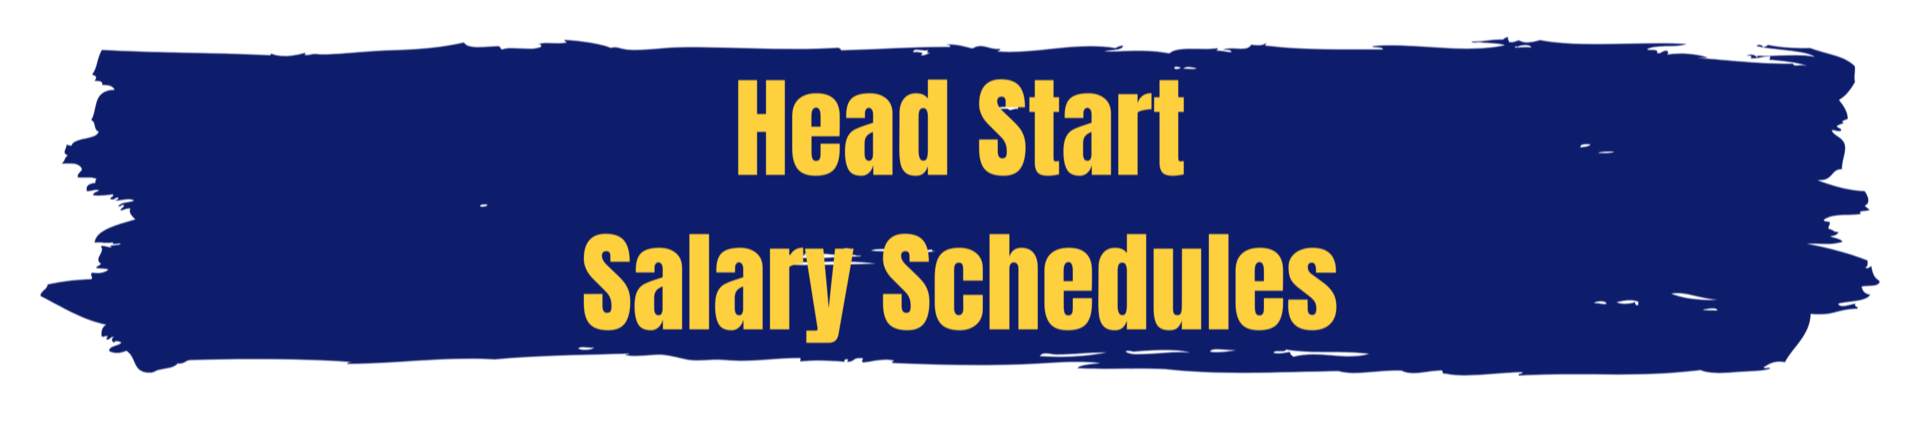 Head Start Salary Schedules